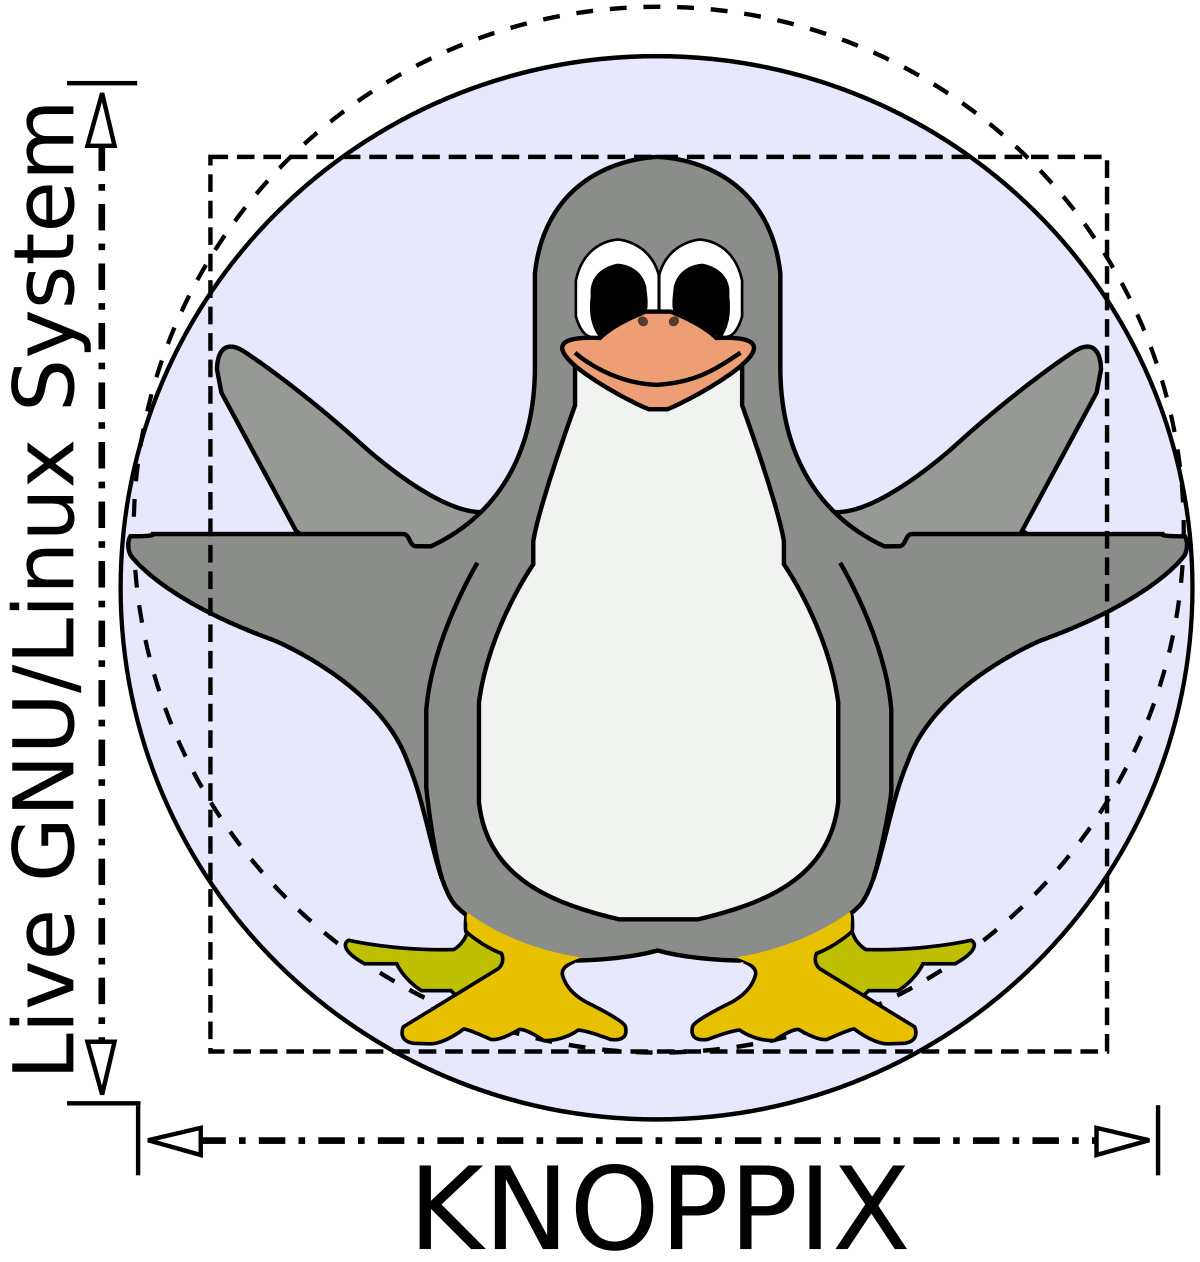 Knoppix Linux OS v8.6.1 DVD - The Original Live Operating System 